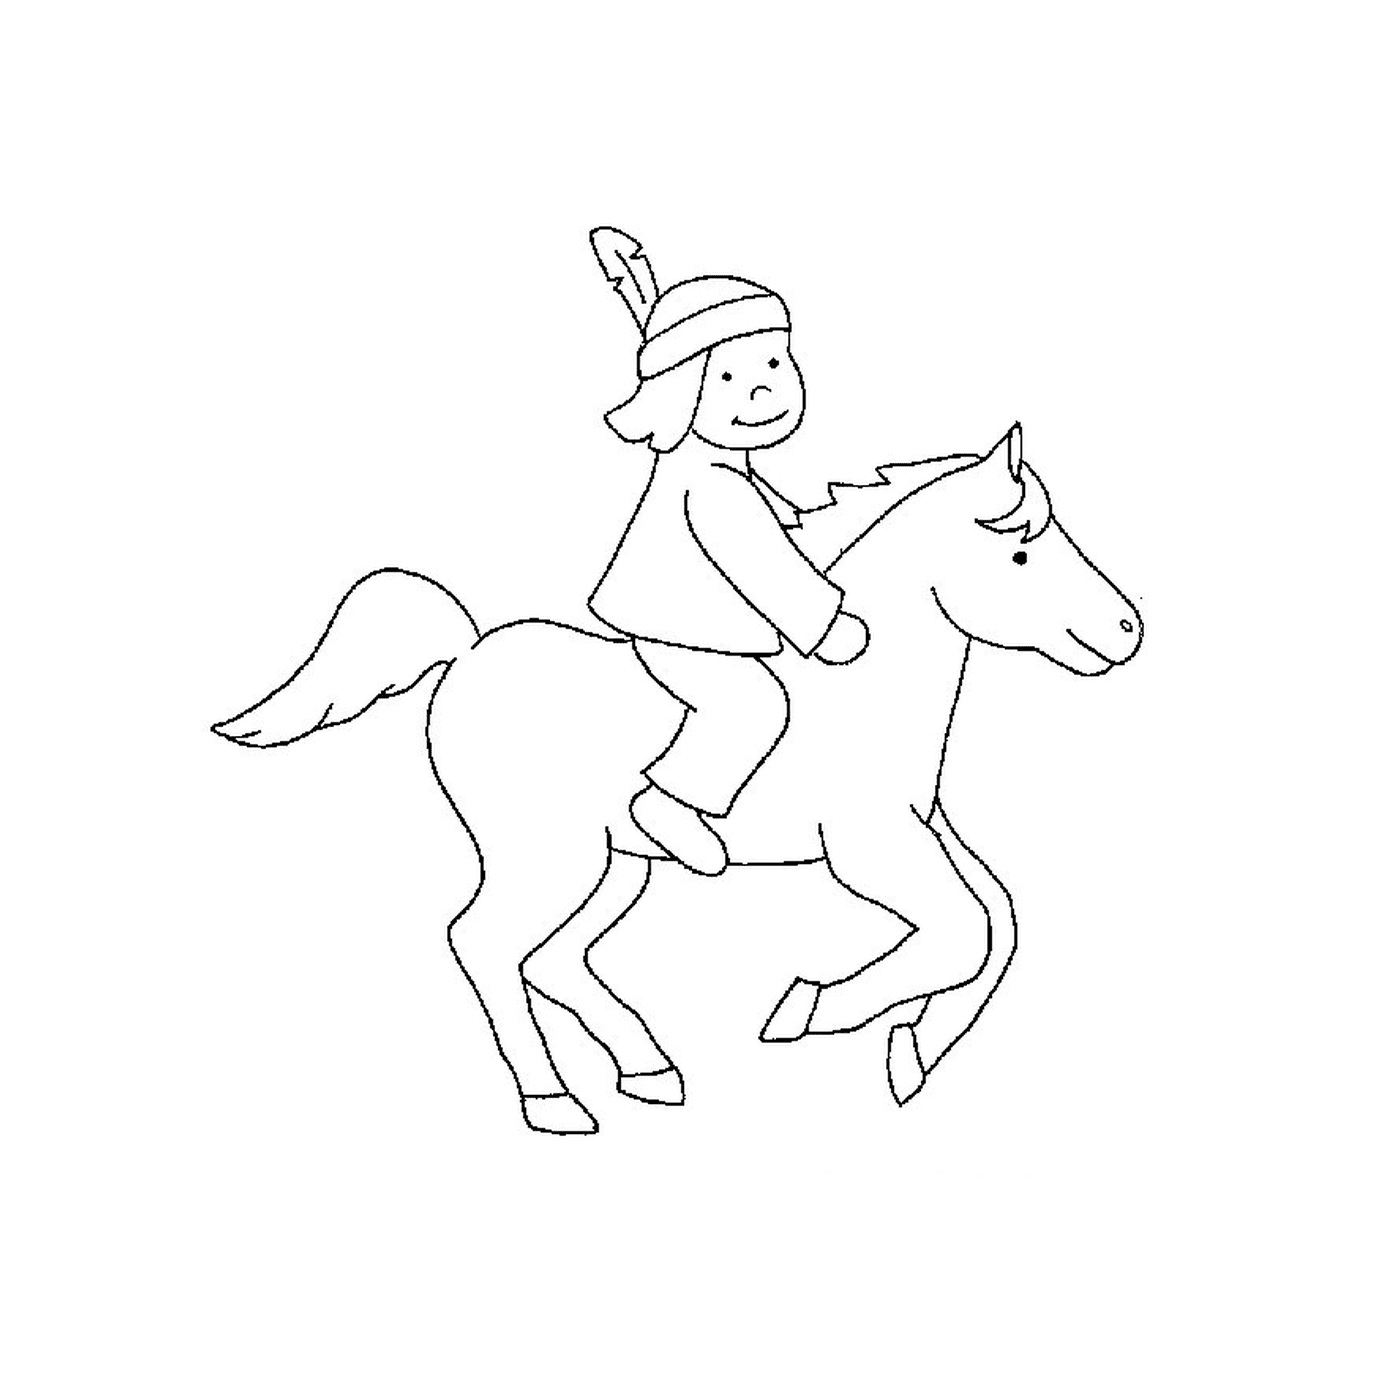  Indio a caballo - Una persona monta un caballo 